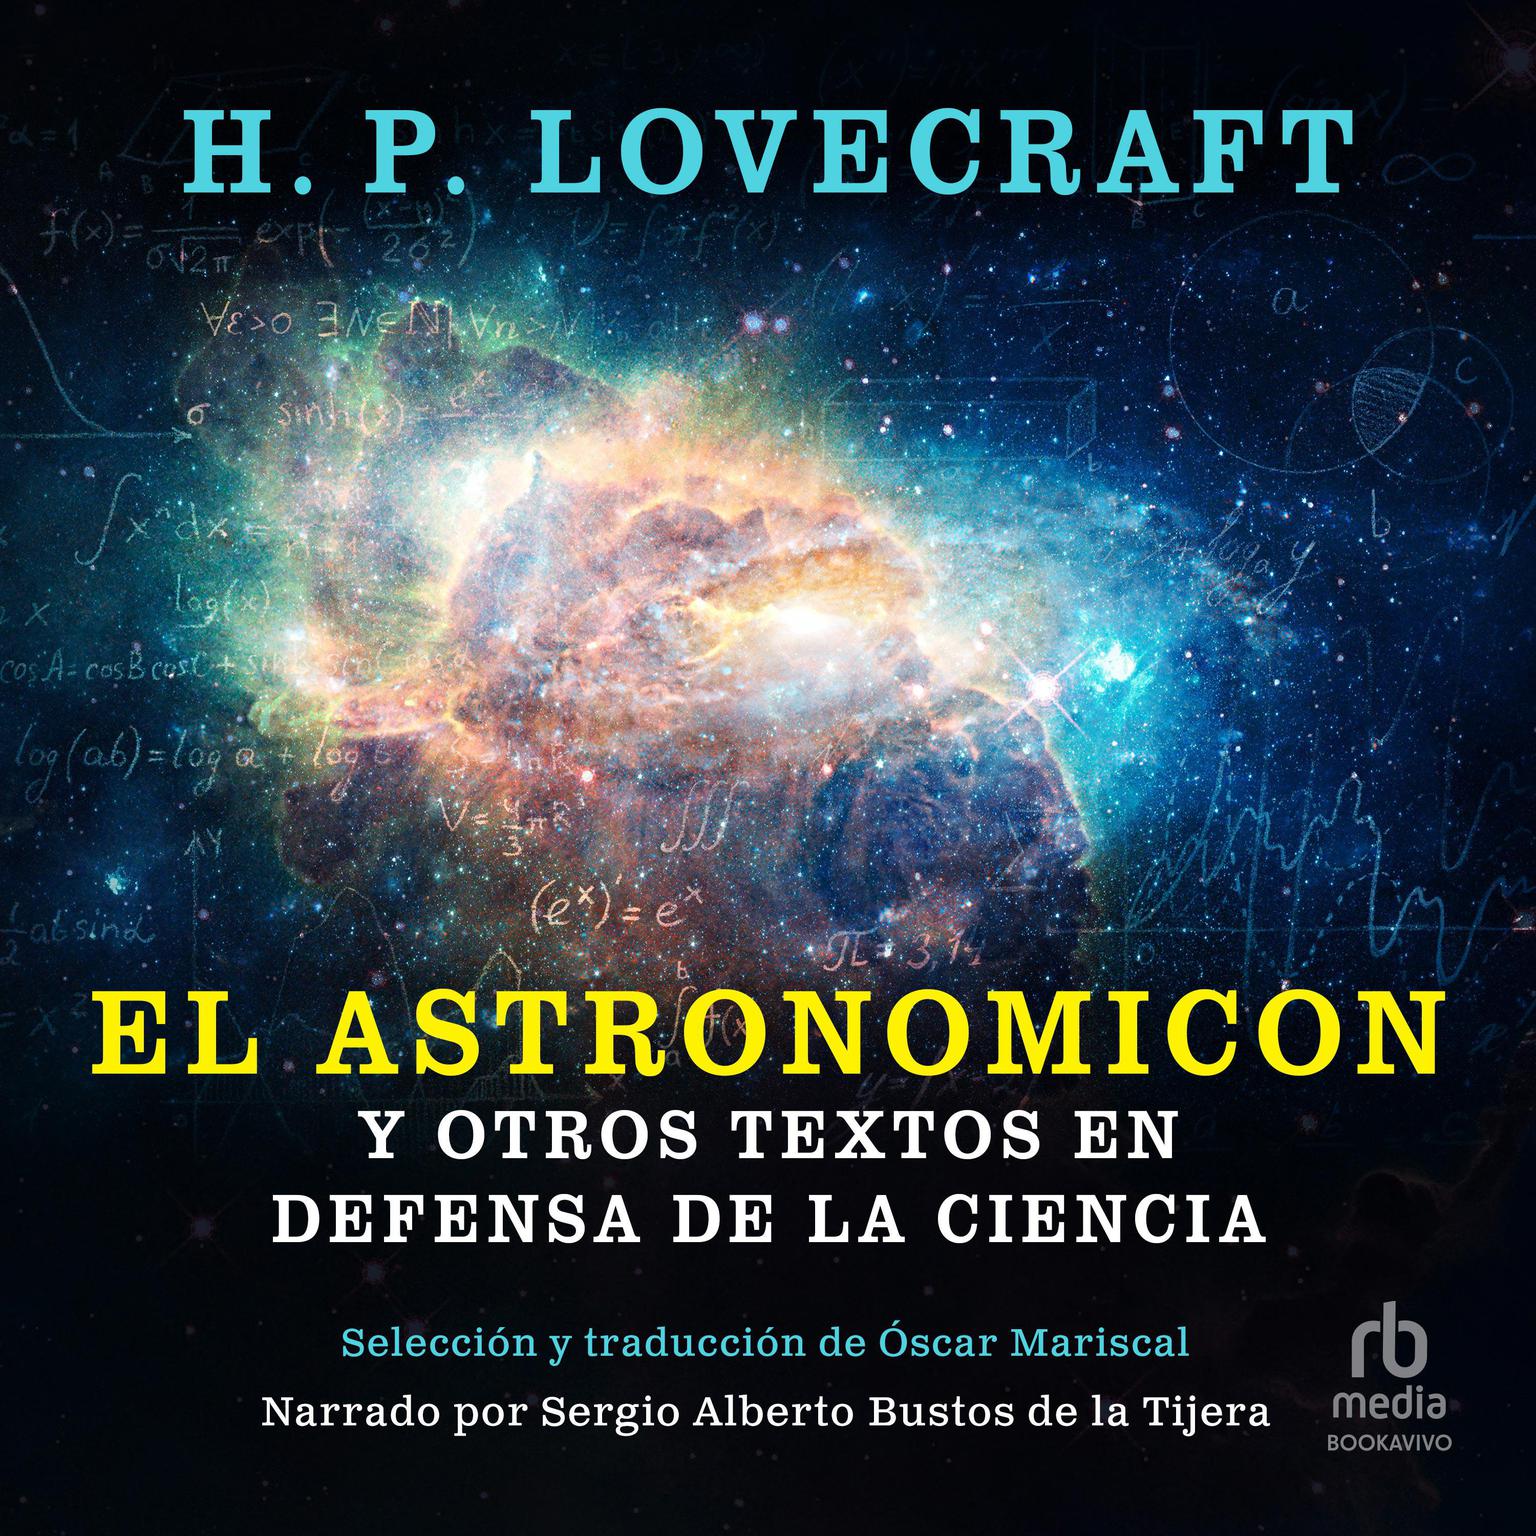 El Astronomicon y otros textos en defensa de la ciencia Audiobook, by H. P. Lovecraft